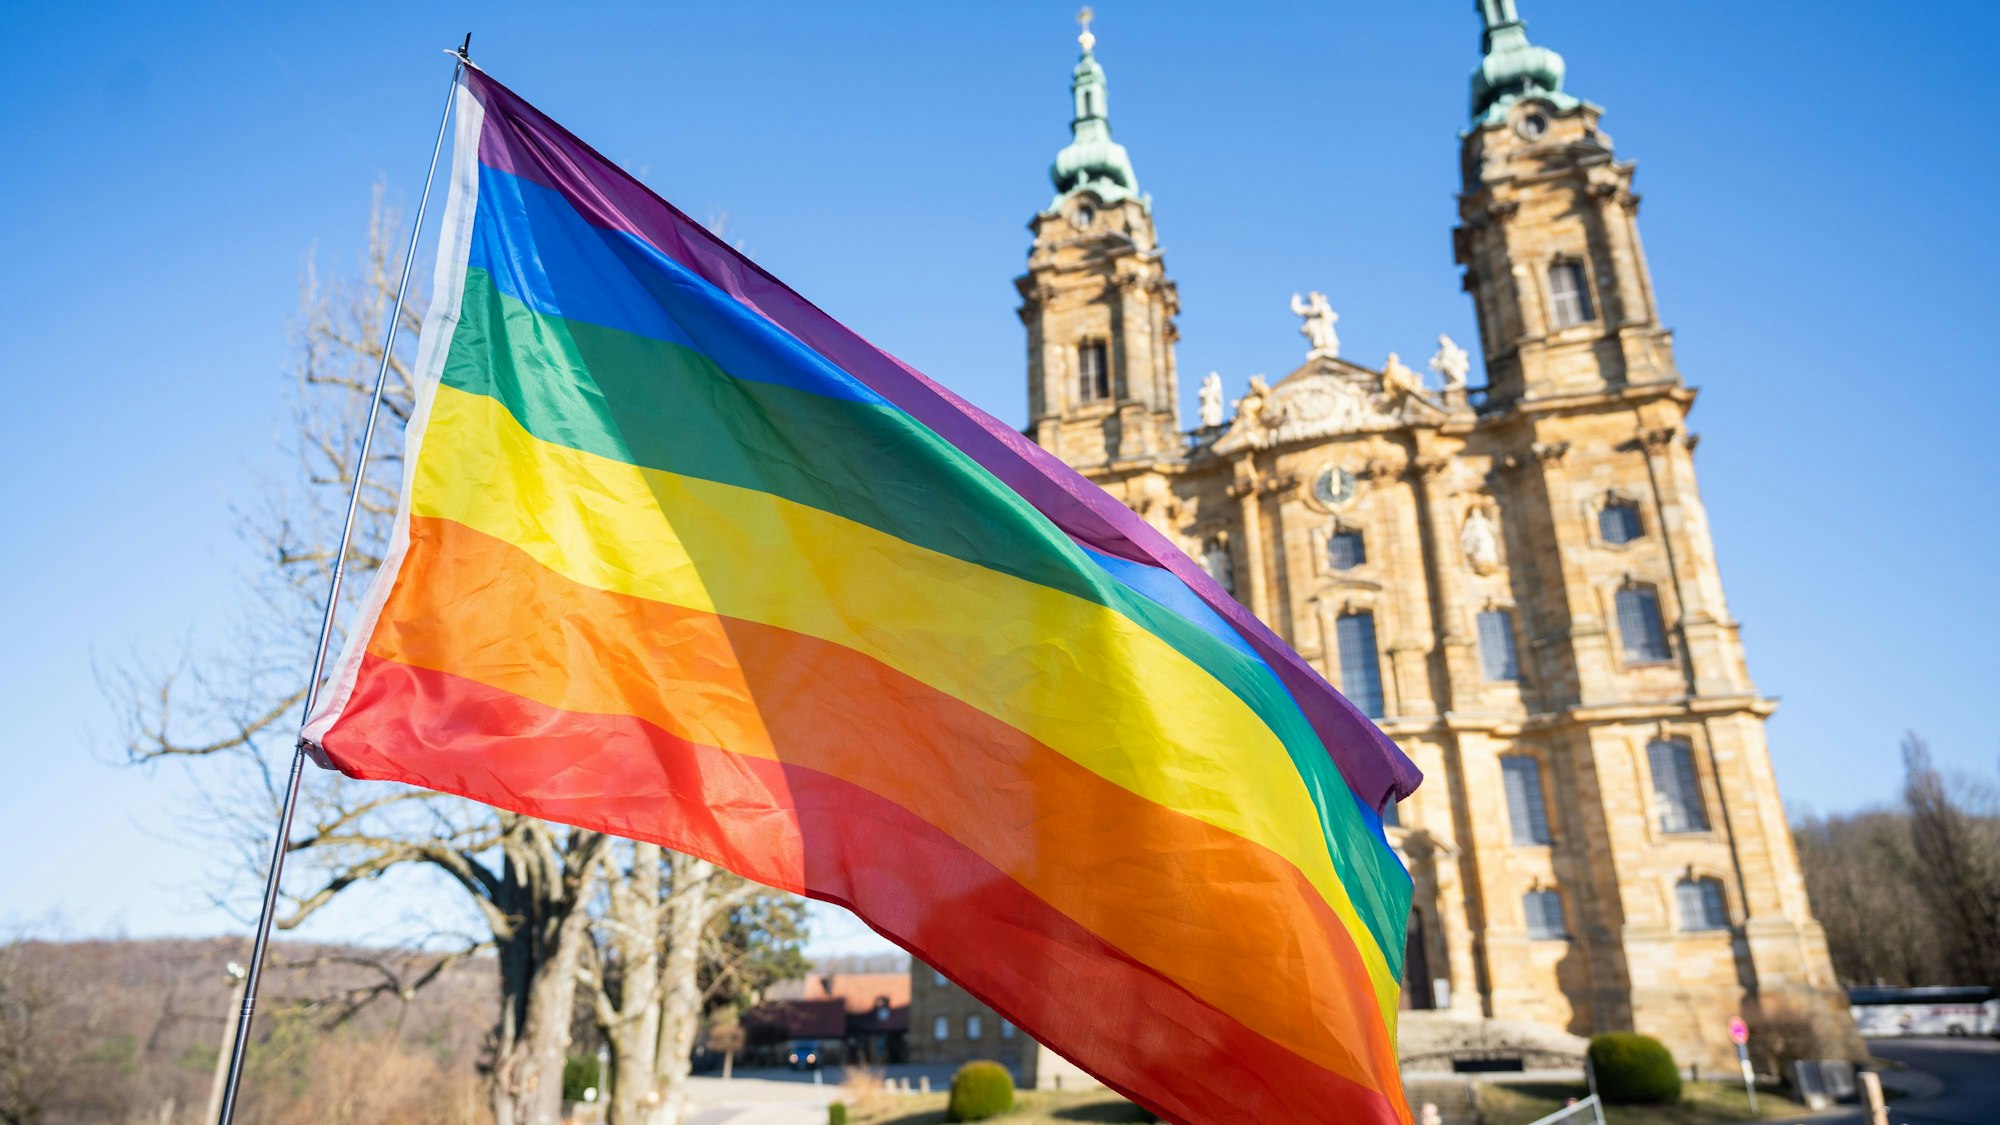 Protest bei der Frühjahrs-Vollversammlung der deutschen Bischöfe: Eine Regenbogenflagge vor der Basilika Vierzehnheiligen.